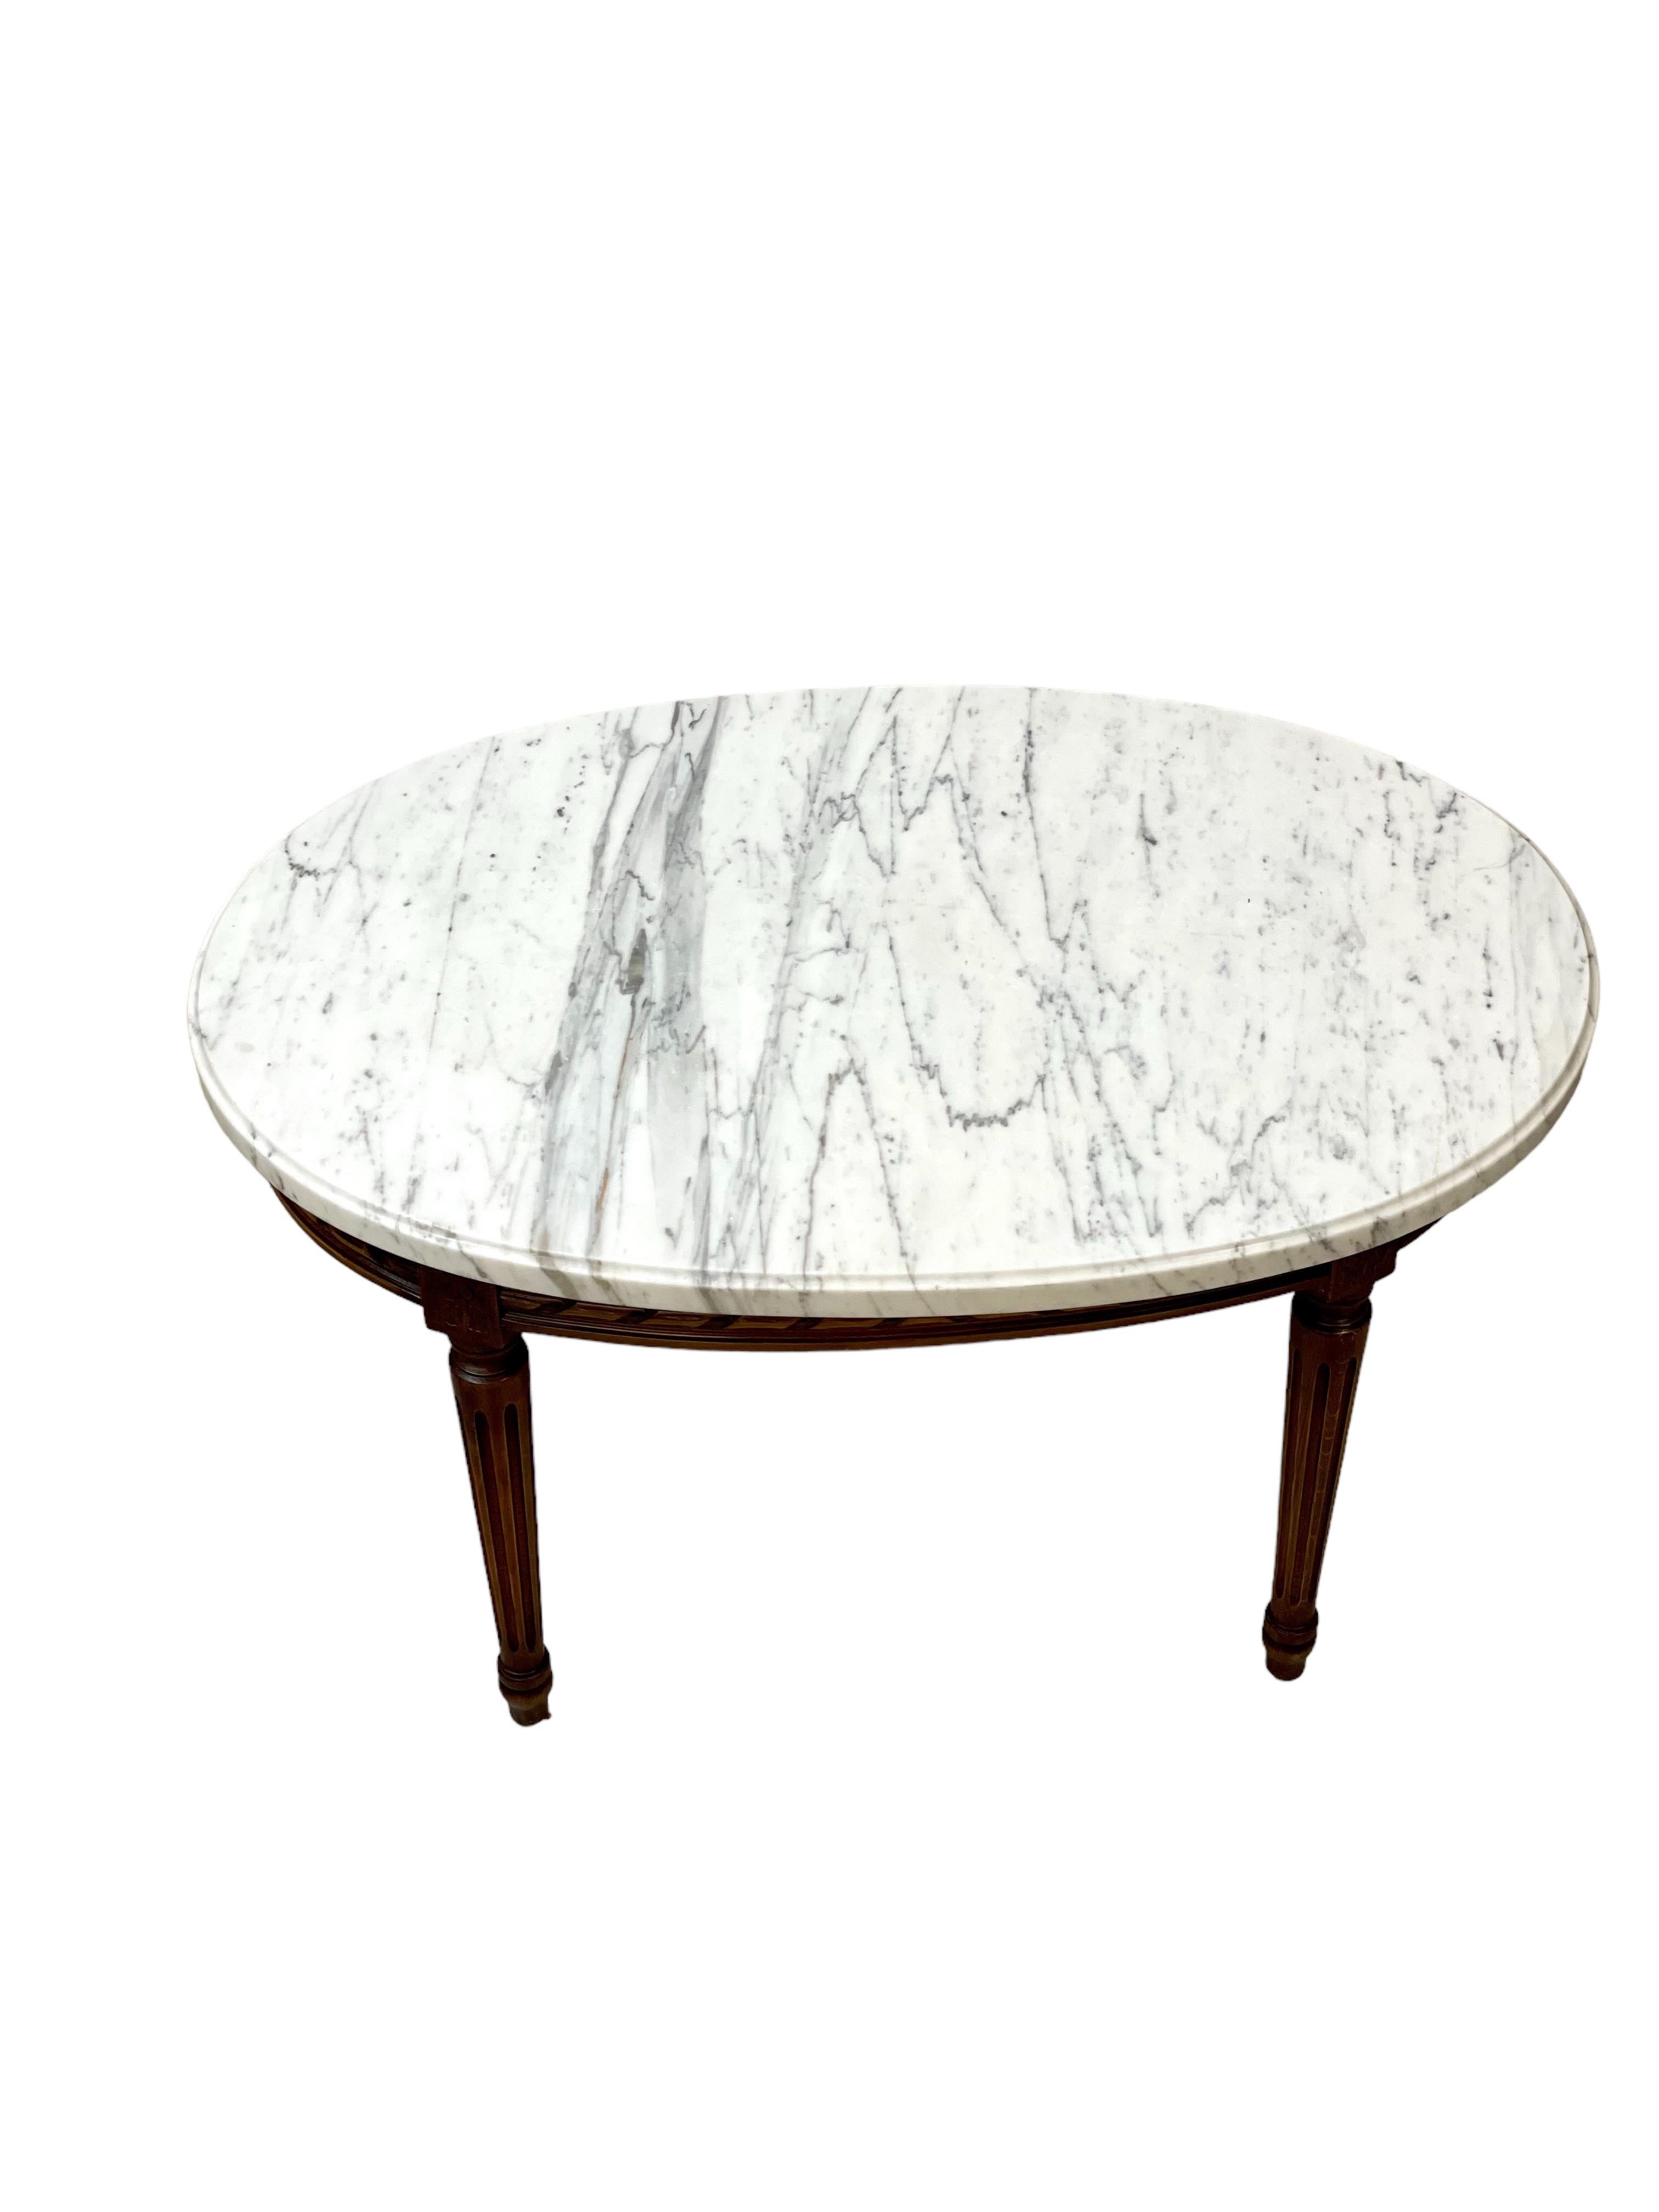 Très belle table basse ovale de style Louis XVI avec un superbe plateau en marbre blanc et gris veiné. Une frise simple mais élégante de style corde torsadée, sculptée à la main, orne le tablier en bois bruni, qui relie les quatre pieds fuselés et